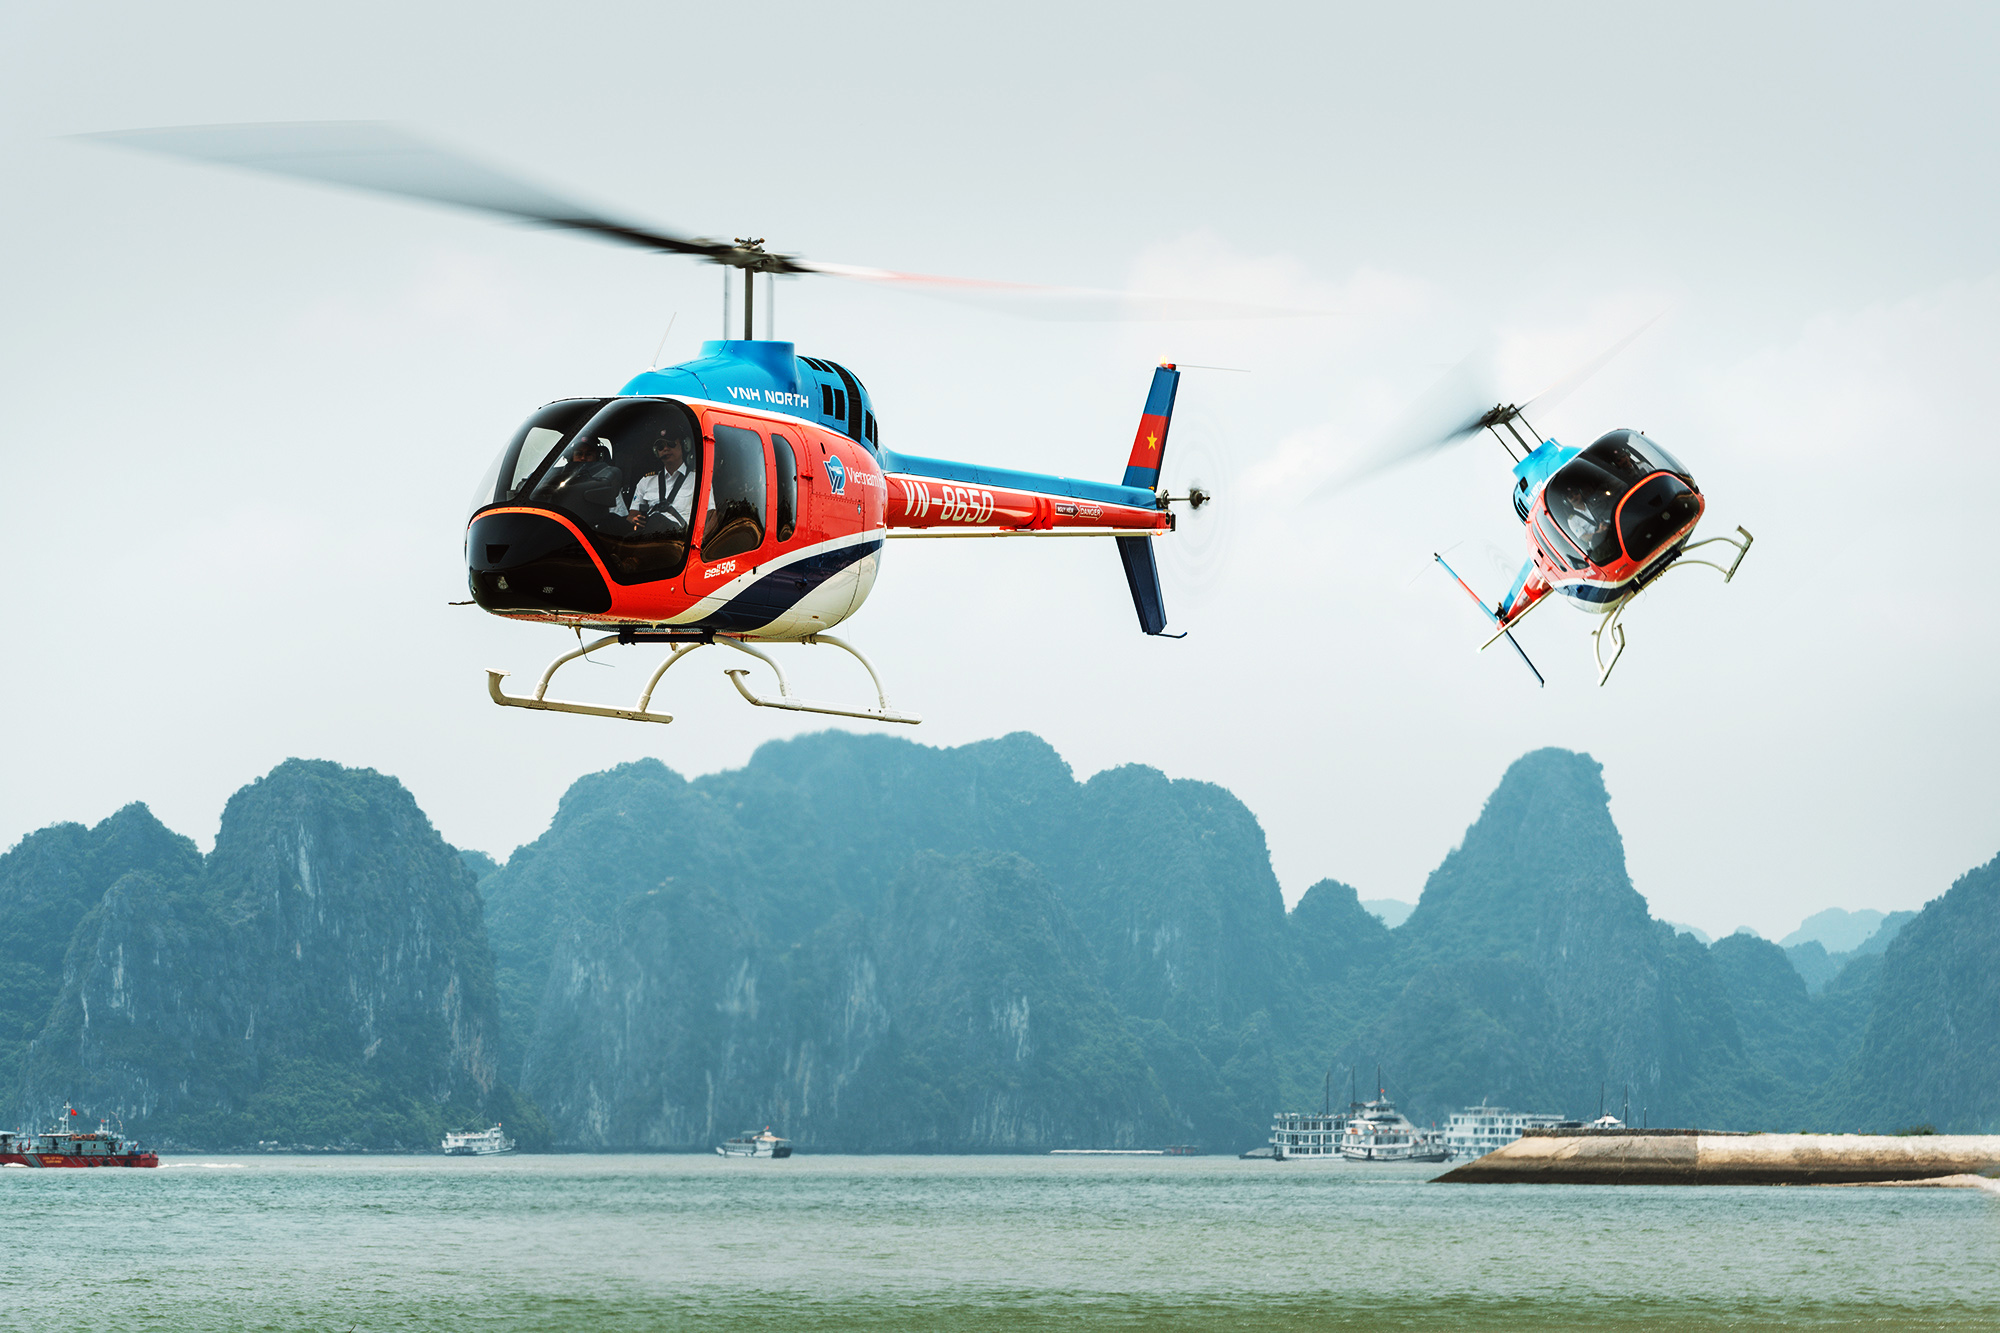 dịch vụ bay trực thăng Halong Heli Tours được khai trương, Quảng Ninh có thêm một dịch vụ du lịch đẳng cấp, hấp dẫn phục vụ nhu cầu của hành khách, khách du lịch có mong muốn được chiêm ngưỡng vẻ đẹp của Di sản thiên nhiên thế giới Vịnh Hạ Long từ trên cao